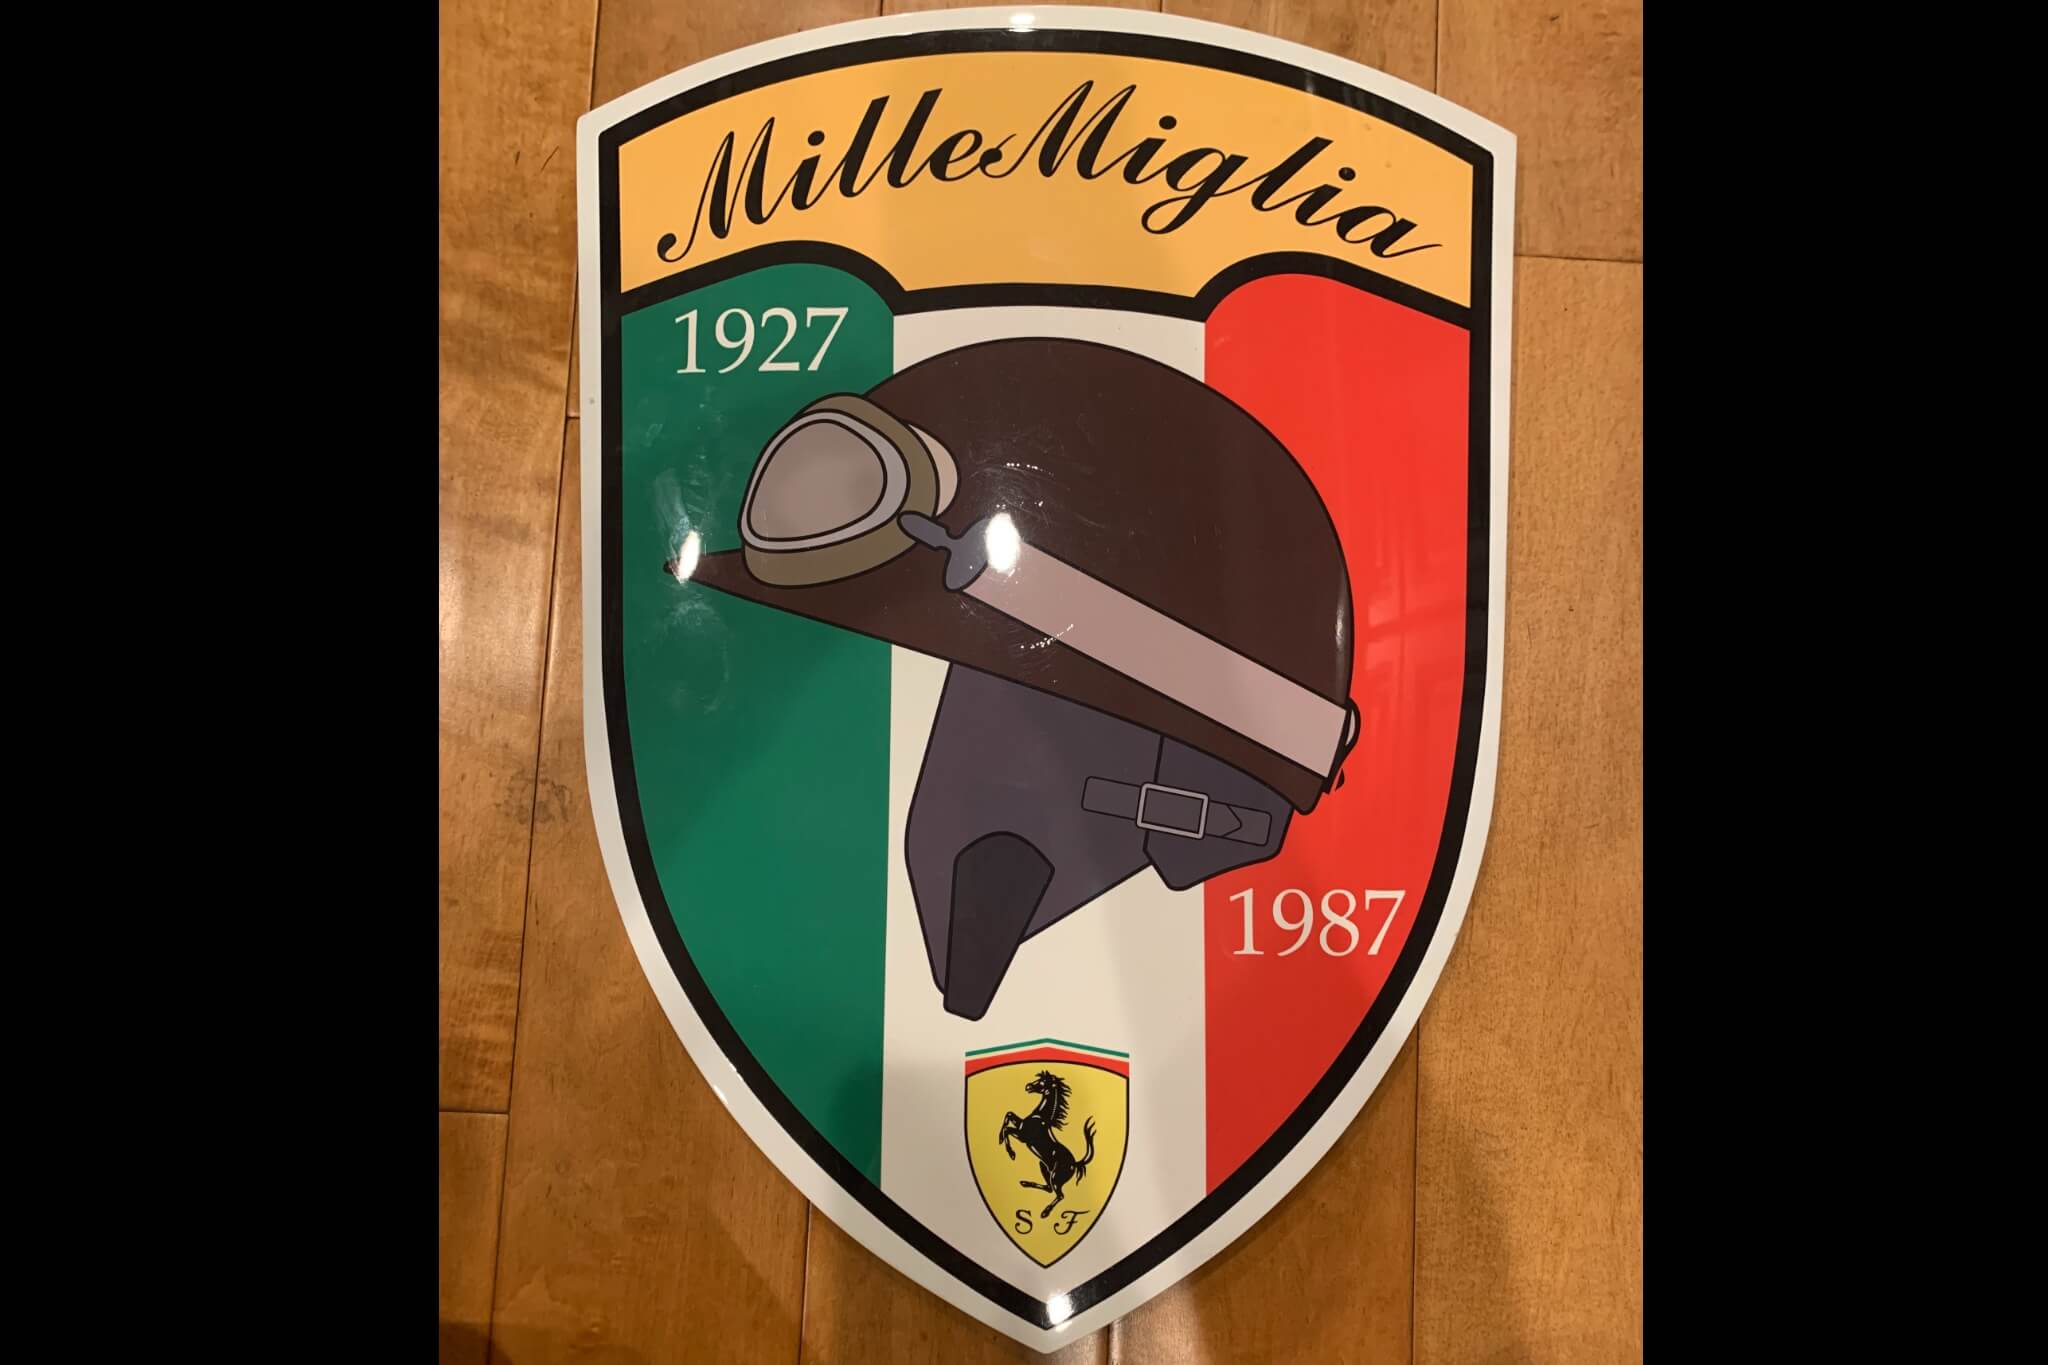  Ferrari Mille Miglia 60th Anniversary Commemorative Shield